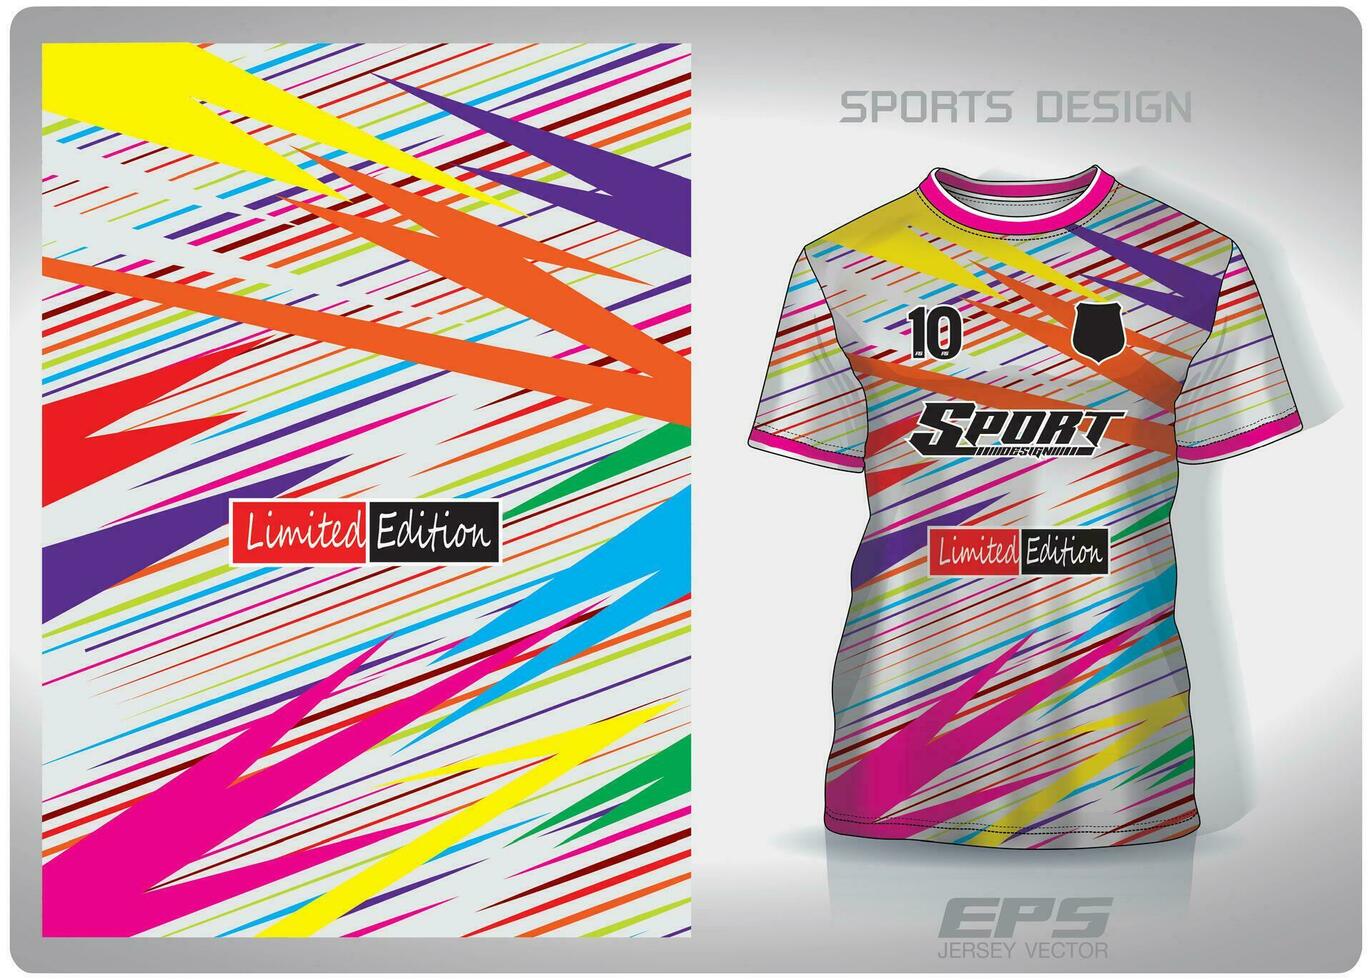 Vektor Sport Hemd Hintergrund Bild.Regenbogen Licht scheint Muster Design, Illustration, Textil- Hintergrund zum Sport T-Shirt, Fußball Jersey Hemd